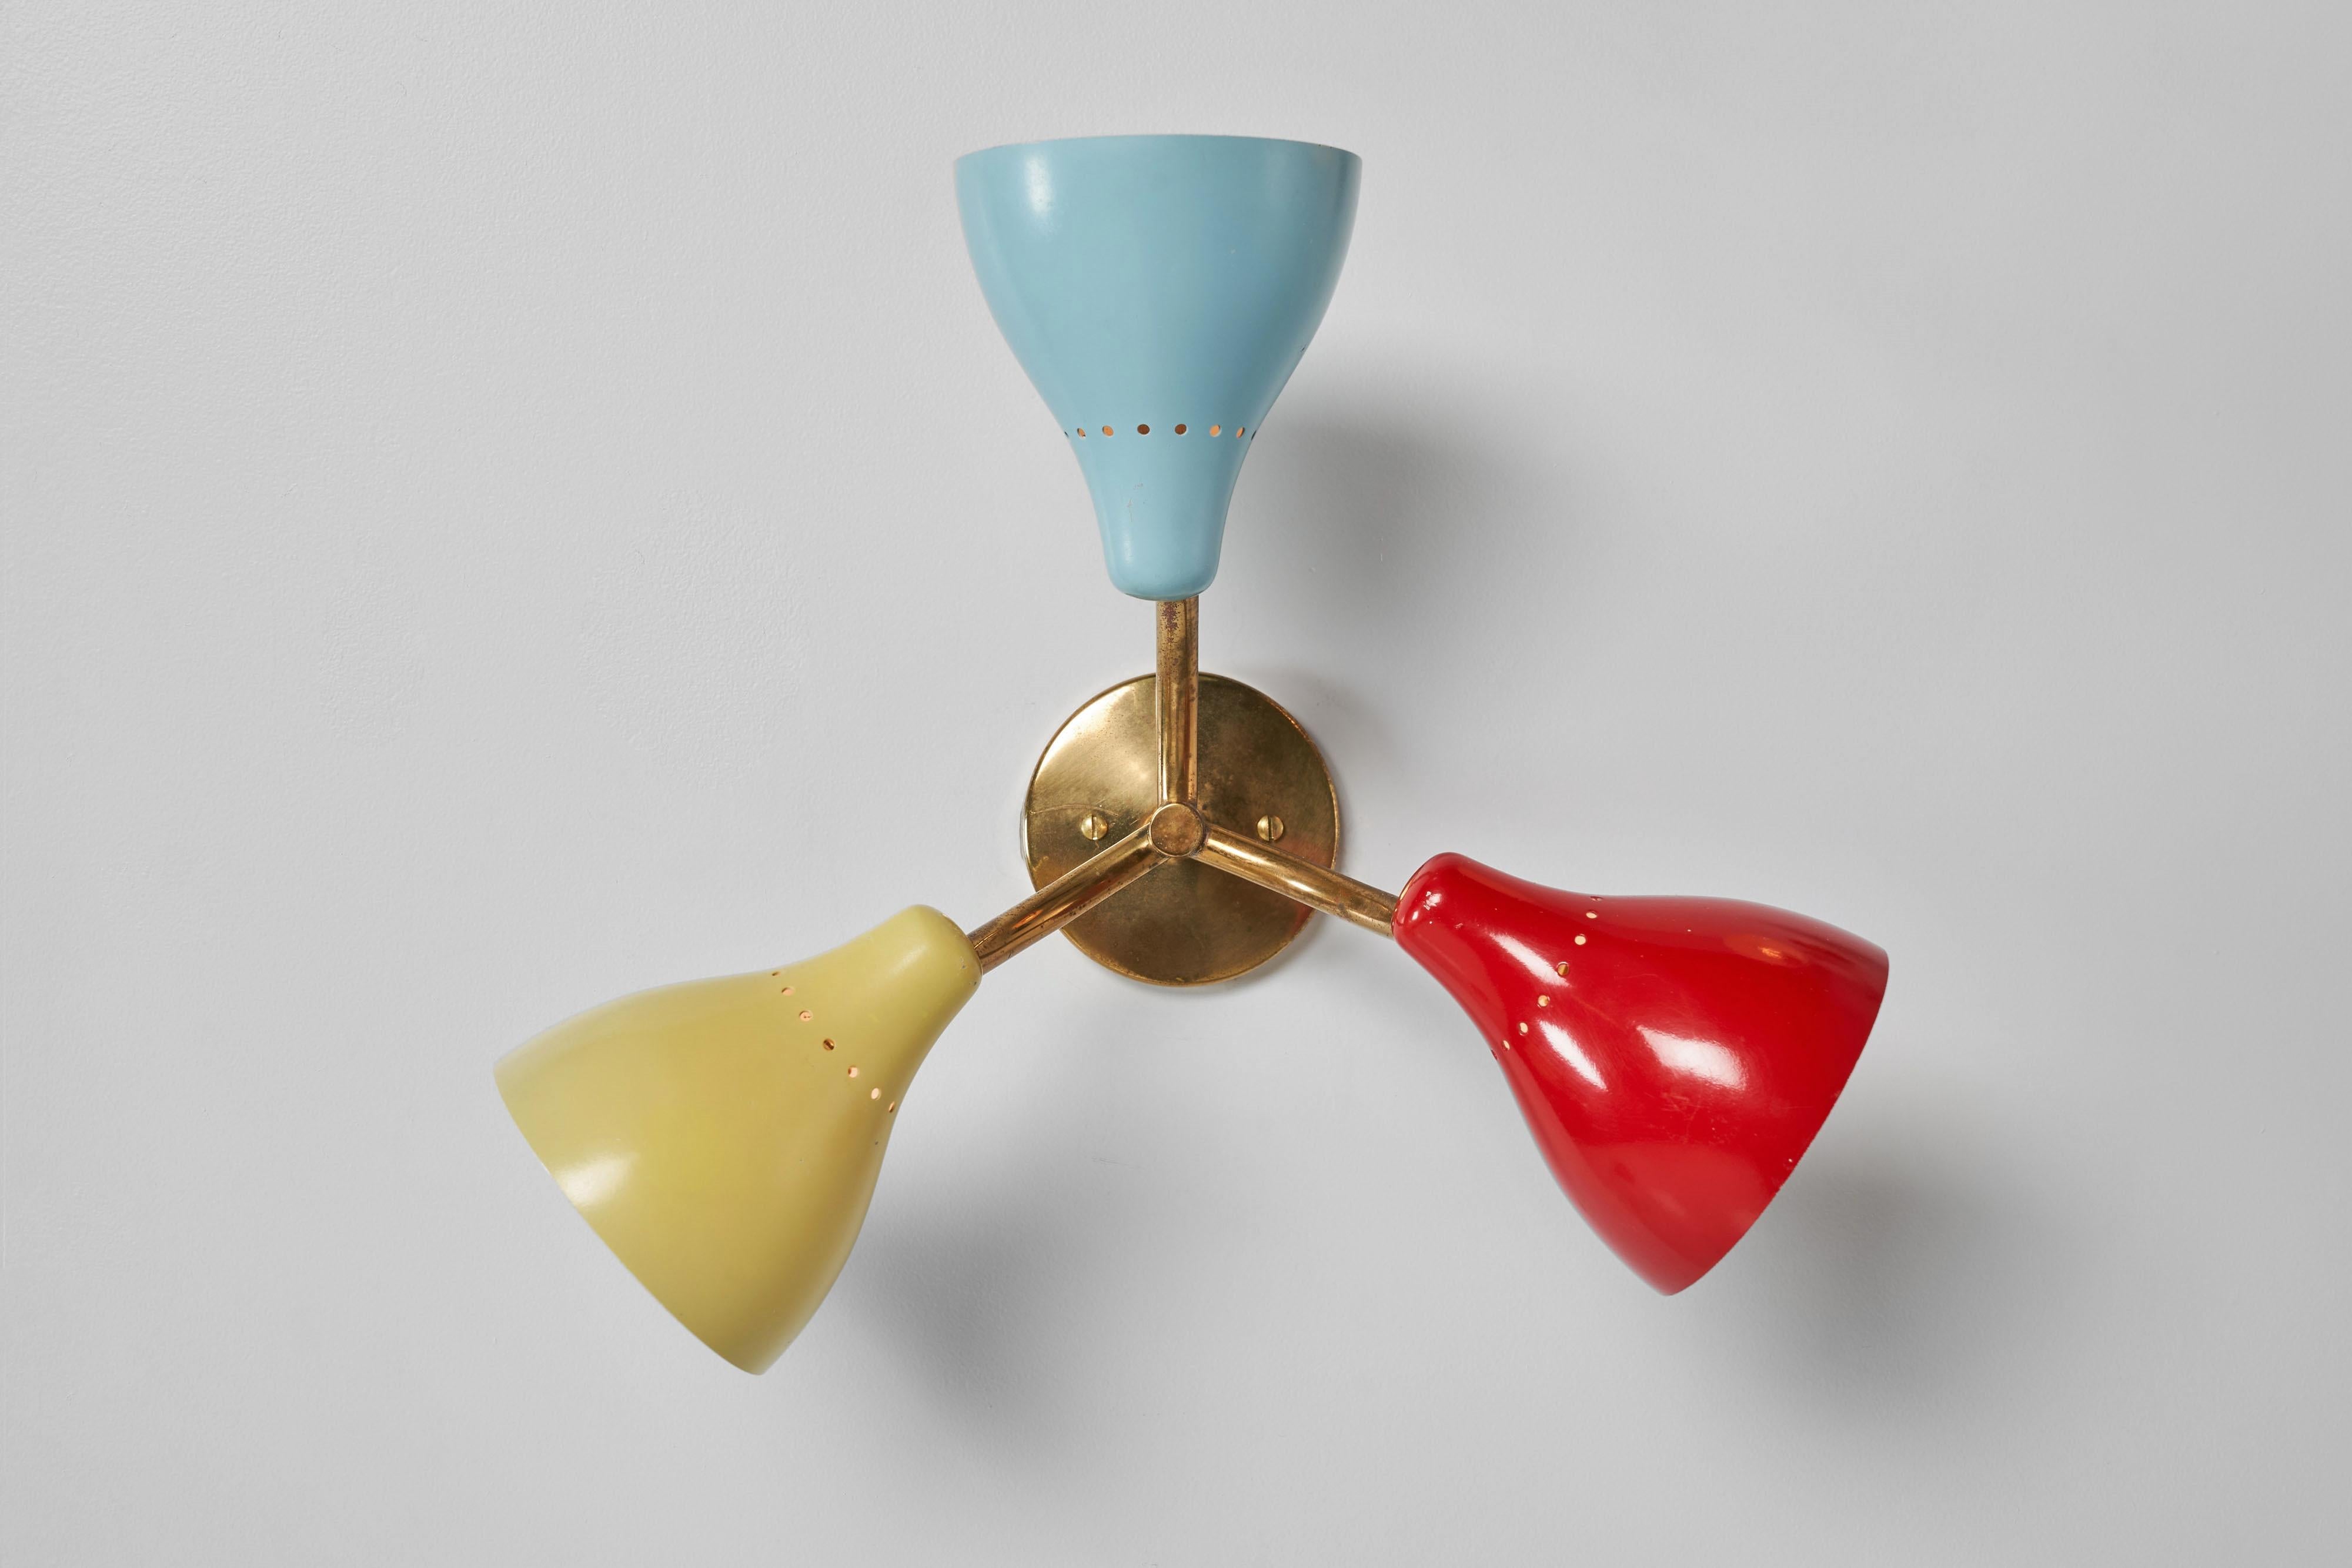 Verspielte Stilnovo Decken- oder Wandlampen mit dreifachem Schirm, hergestellt in Italien im Jahr 1950. Sie können sie als Wand- oder Deckenleuchten verwenden, und die Schirme sind verstellbar, so dass Sie das Licht ganz nach Ihren Wünschen steuern